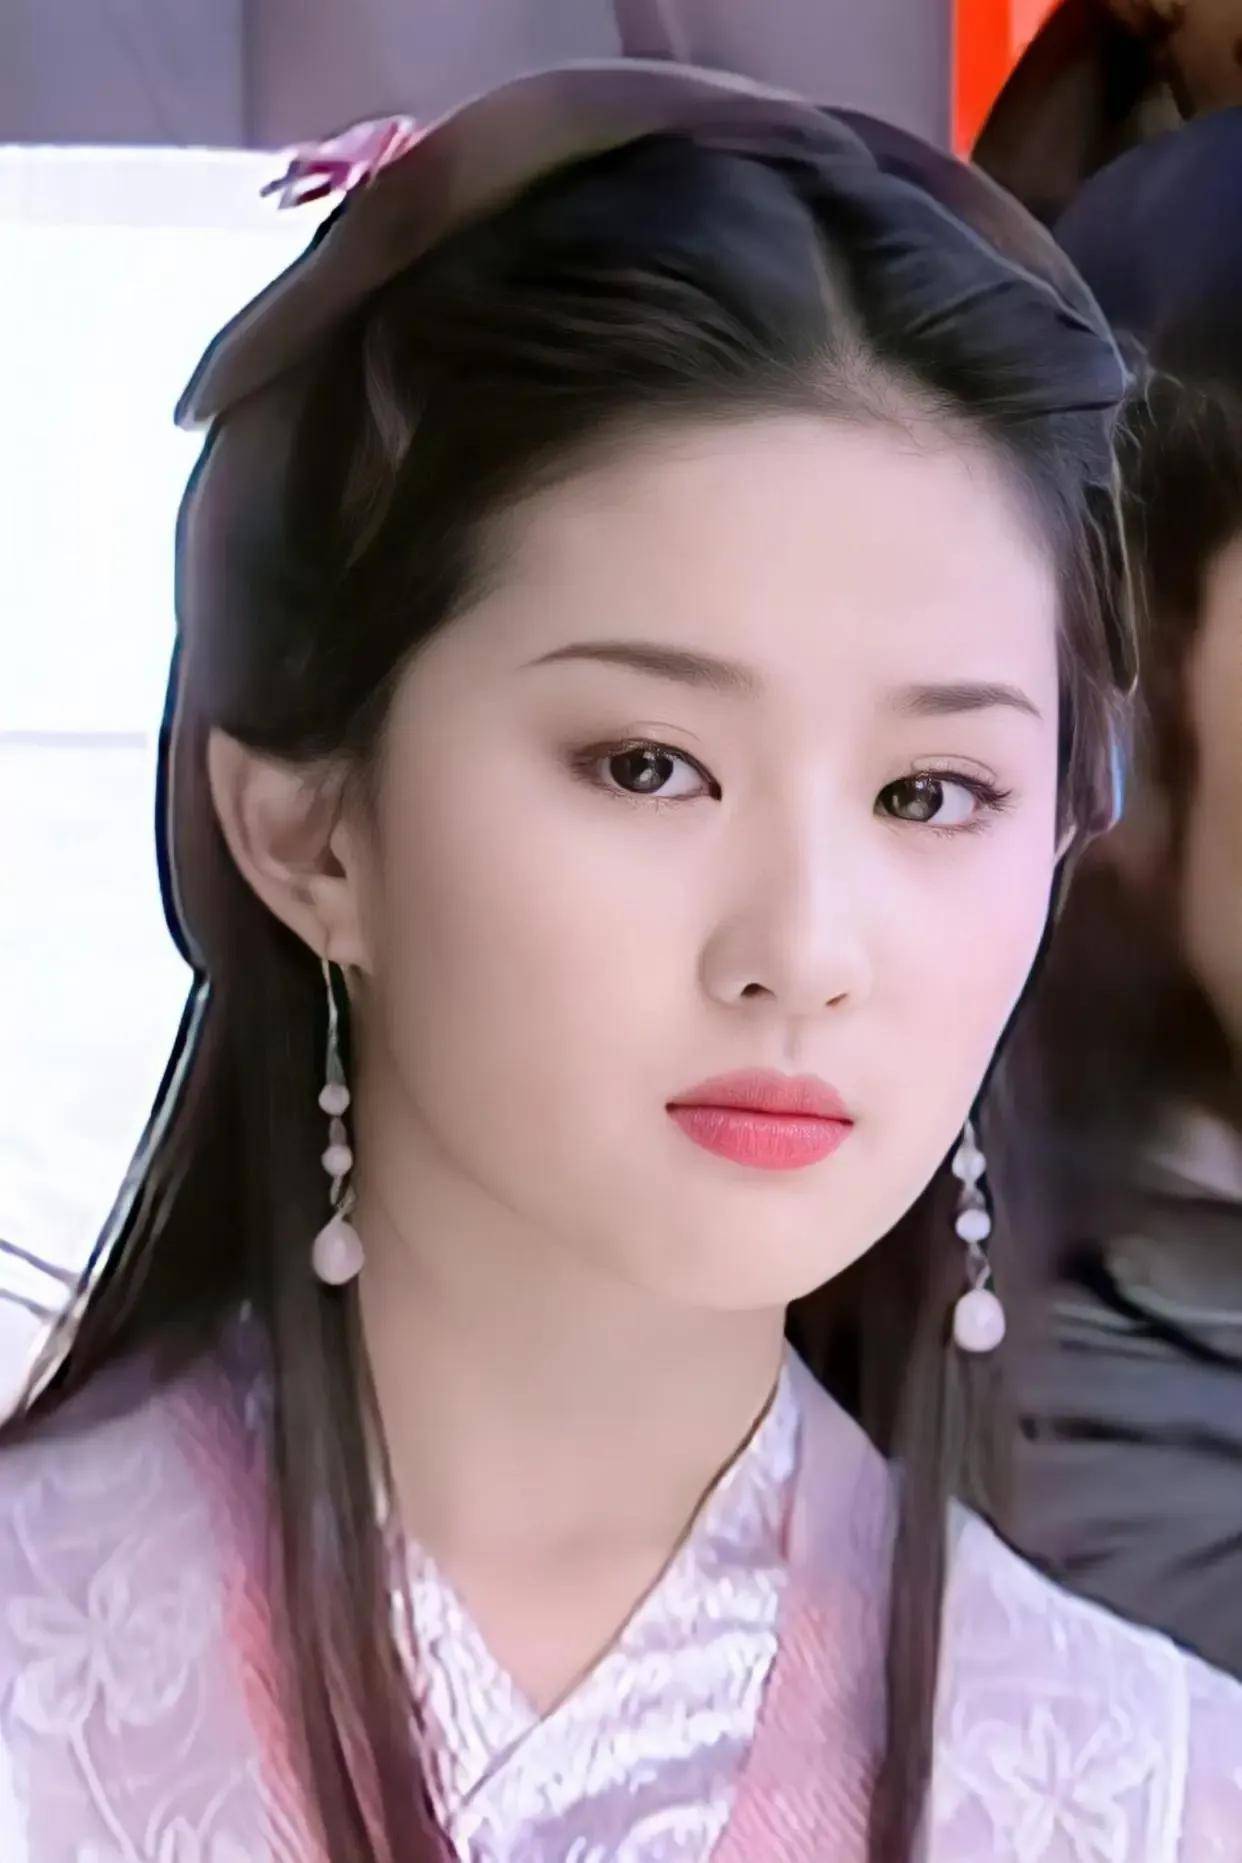 《天龙八部》,在剧中饰演温柔贤淑,清艳唯美才华绝世的美女王语嫣后